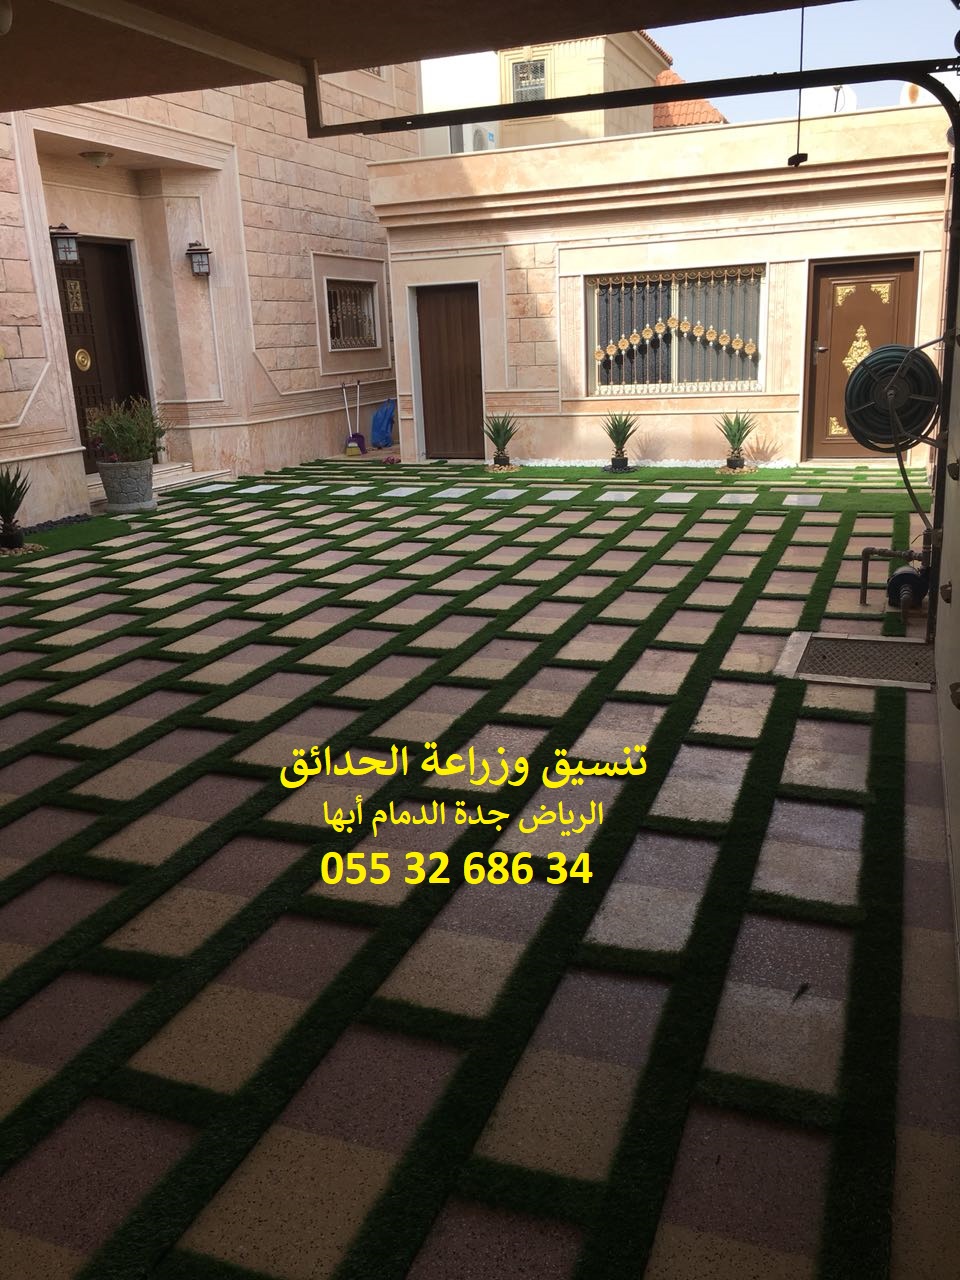 شركة تنسيق حدائق الرياض جدة الدمام ابها 0553268634 P_867ixk4s8